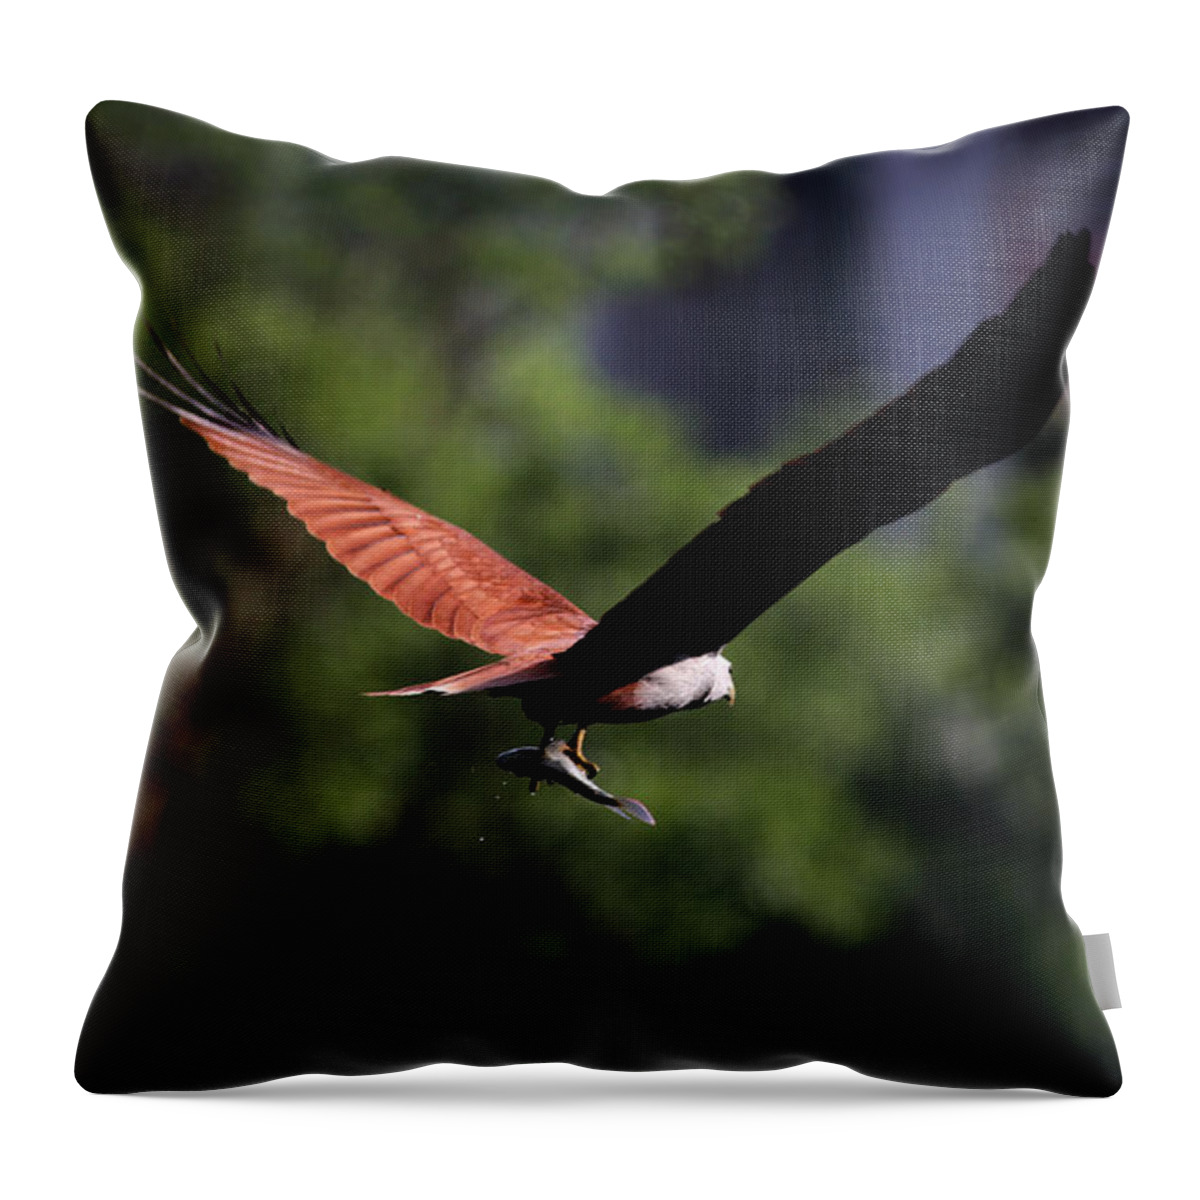 Brahminy Kite Throw Pillow featuring the photograph Brahminy Kite With Catch by Ramabhadran Thirupattur